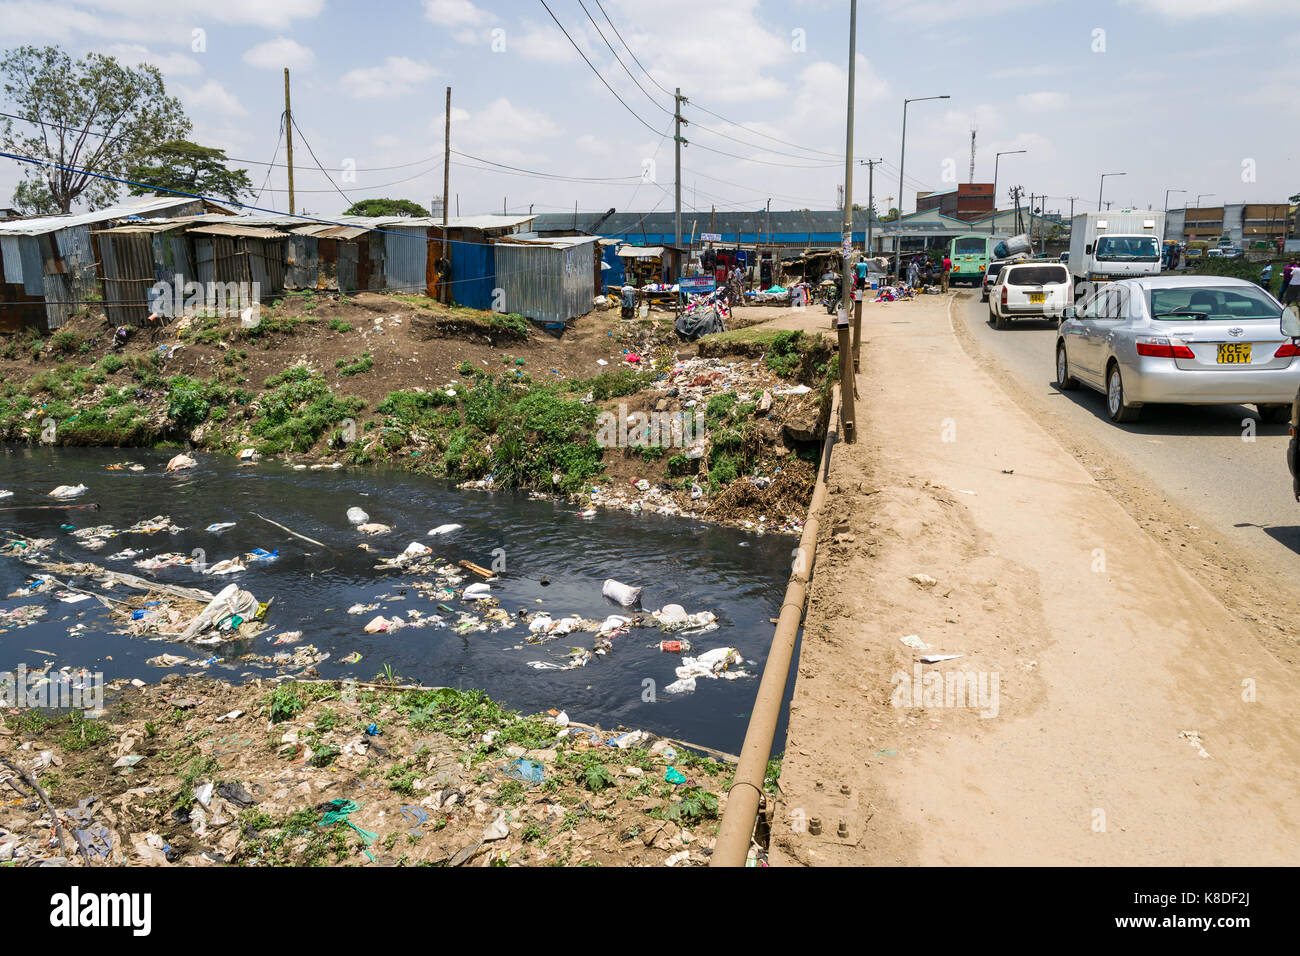 Enterprise Straße Brücke der Ngong Fluss, der mit Müll verunreinigt ist, Kunststoff Abfall und Müll Kreuze, slum Hütten säumen den Fluss, Nairobi, Kenia Stockfoto